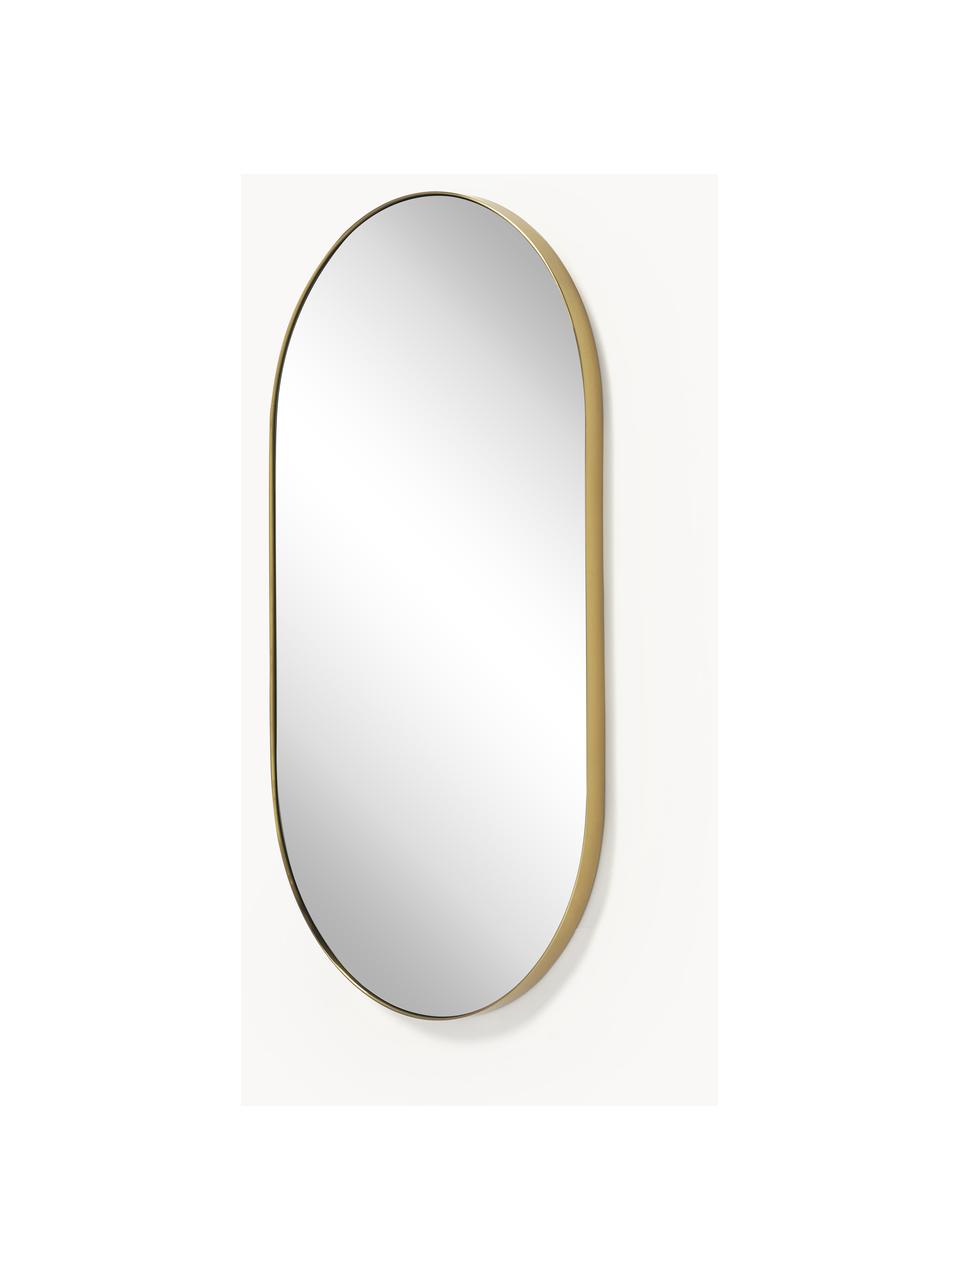 Ovaler Wandspiegel Lucia, Rahmen: Metall, Spiegelfläche: Spiegelglas, Rückseite: Mitteldichte Holzfaserpla, Goldfarben, B 40 x H 70 cm